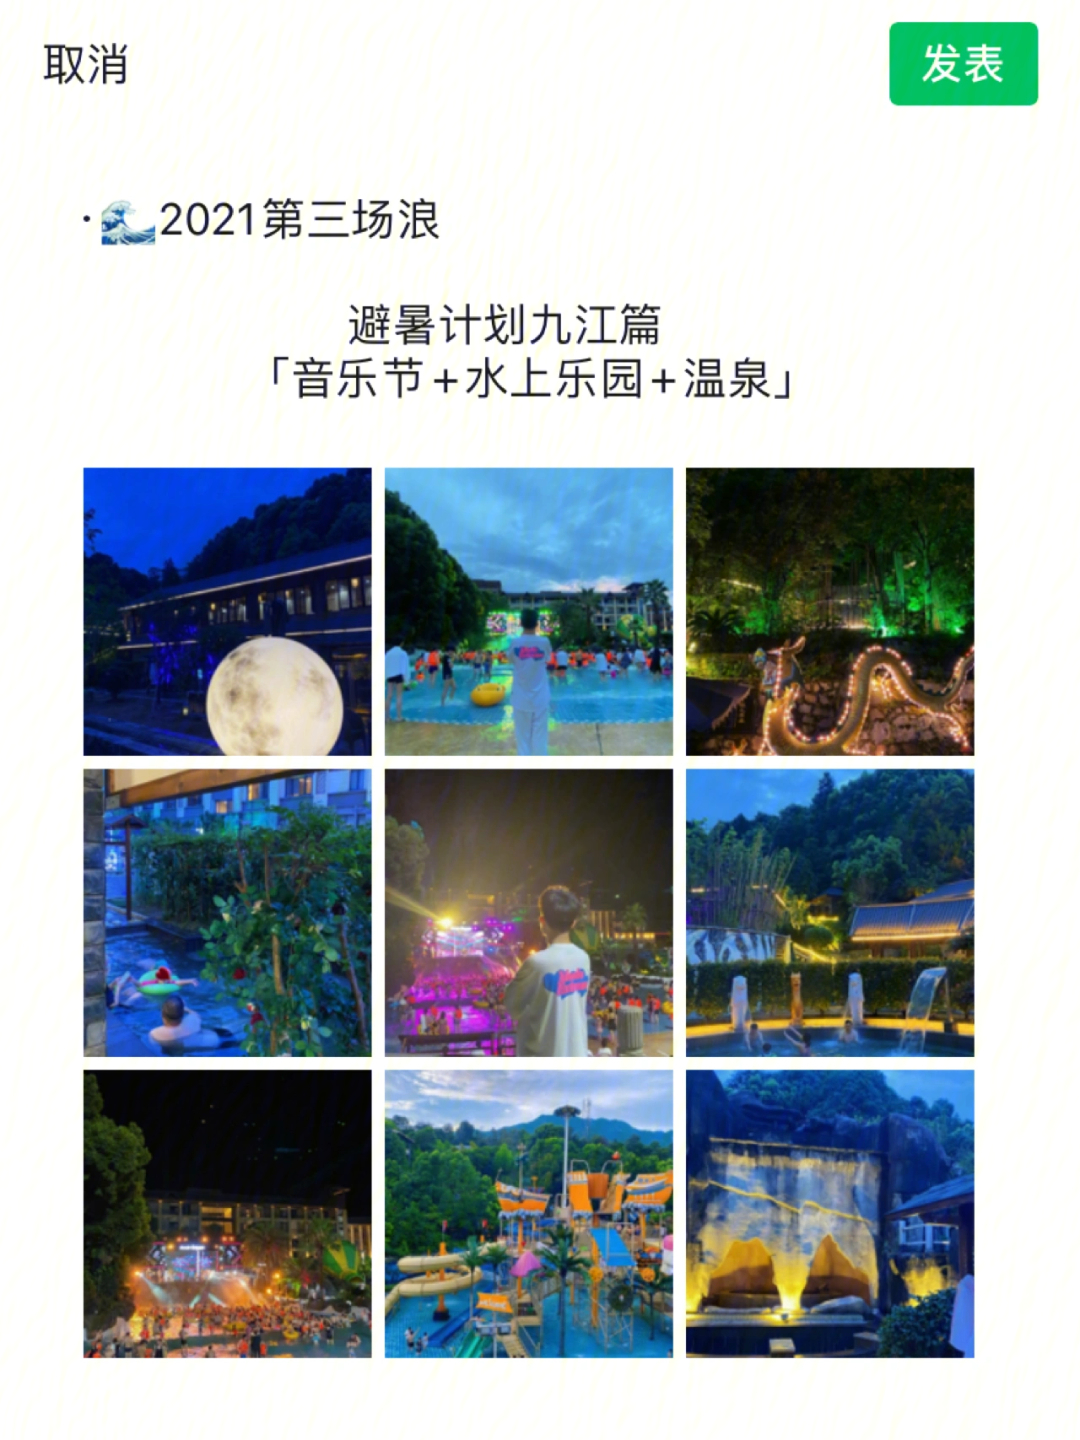 蒂玛乌斯温泉节网站图片